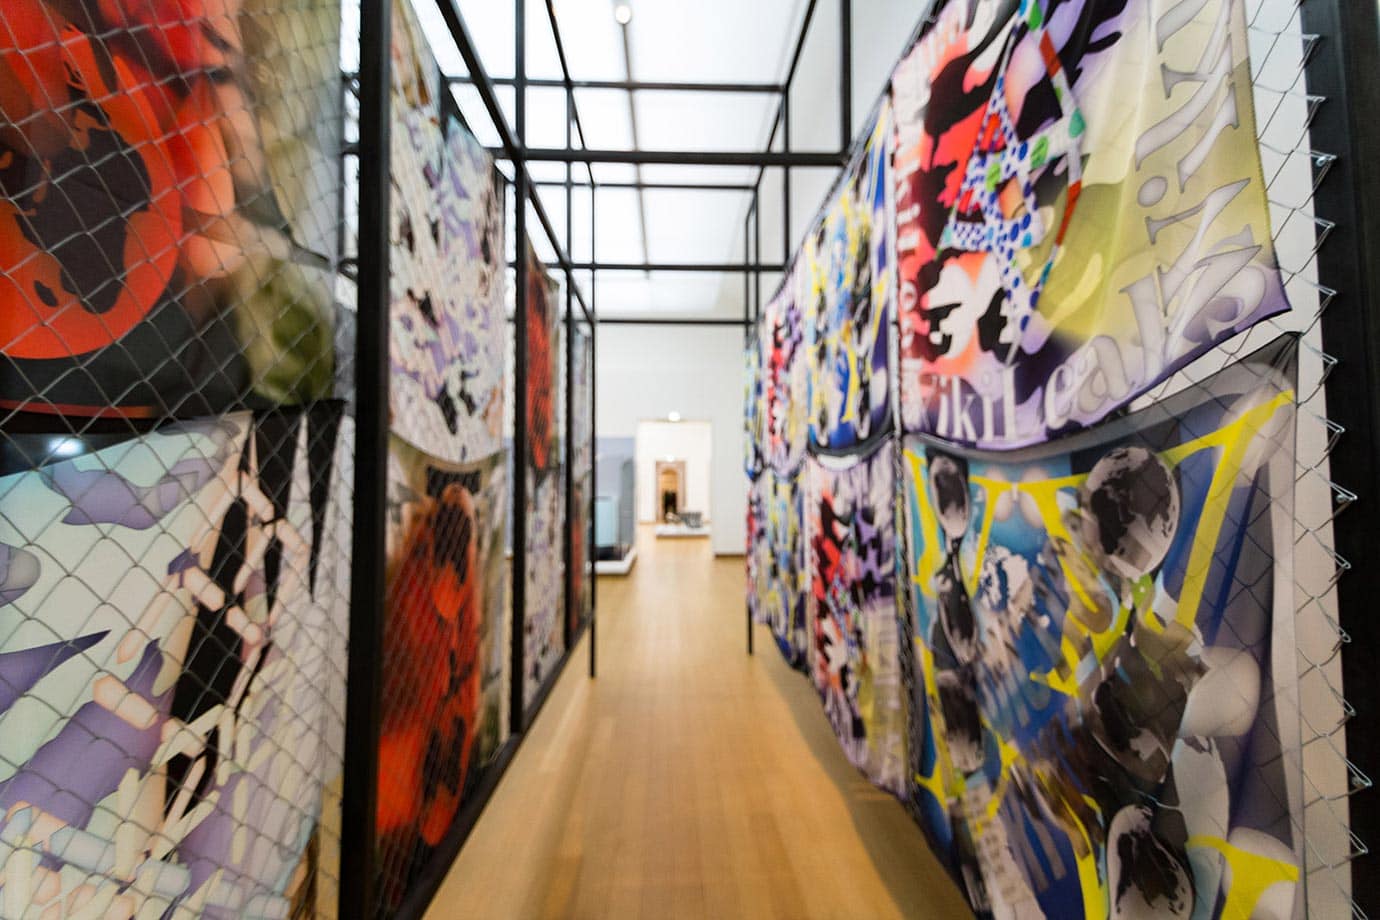 阿姆斯特丹市立博物馆五颜六色的画廊